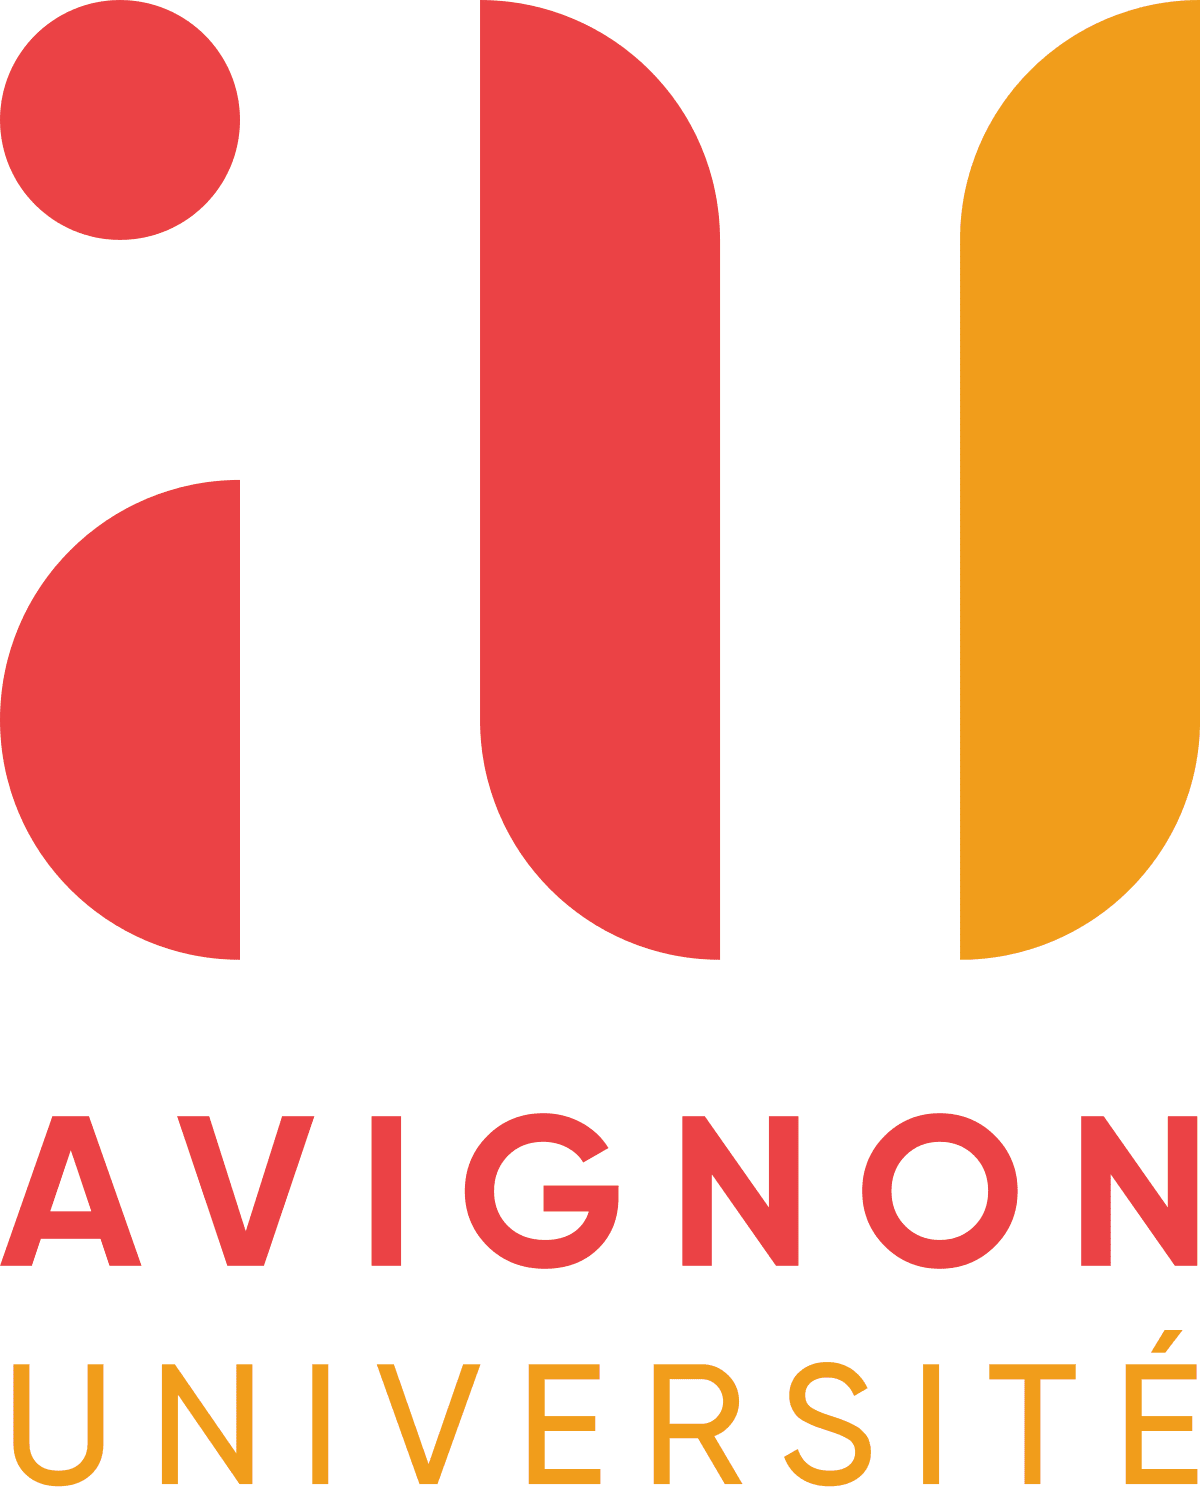 Université dAvignon logo